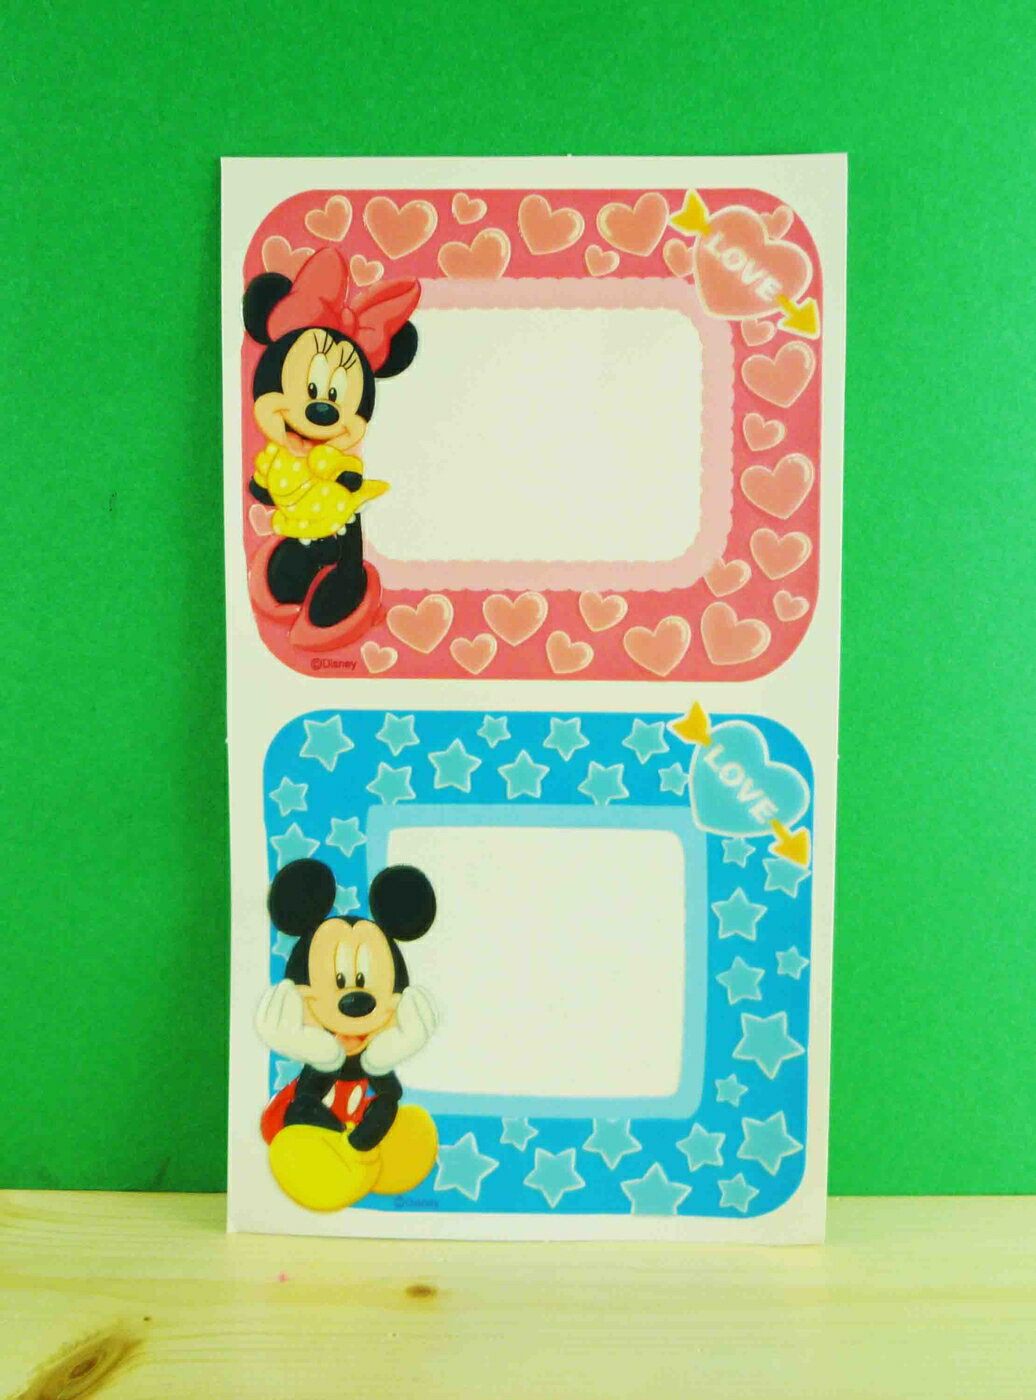 【震撼精品百貨】Micky Mouse 米奇/米妮 相框貼-粉藍 震撼日式精品百貨